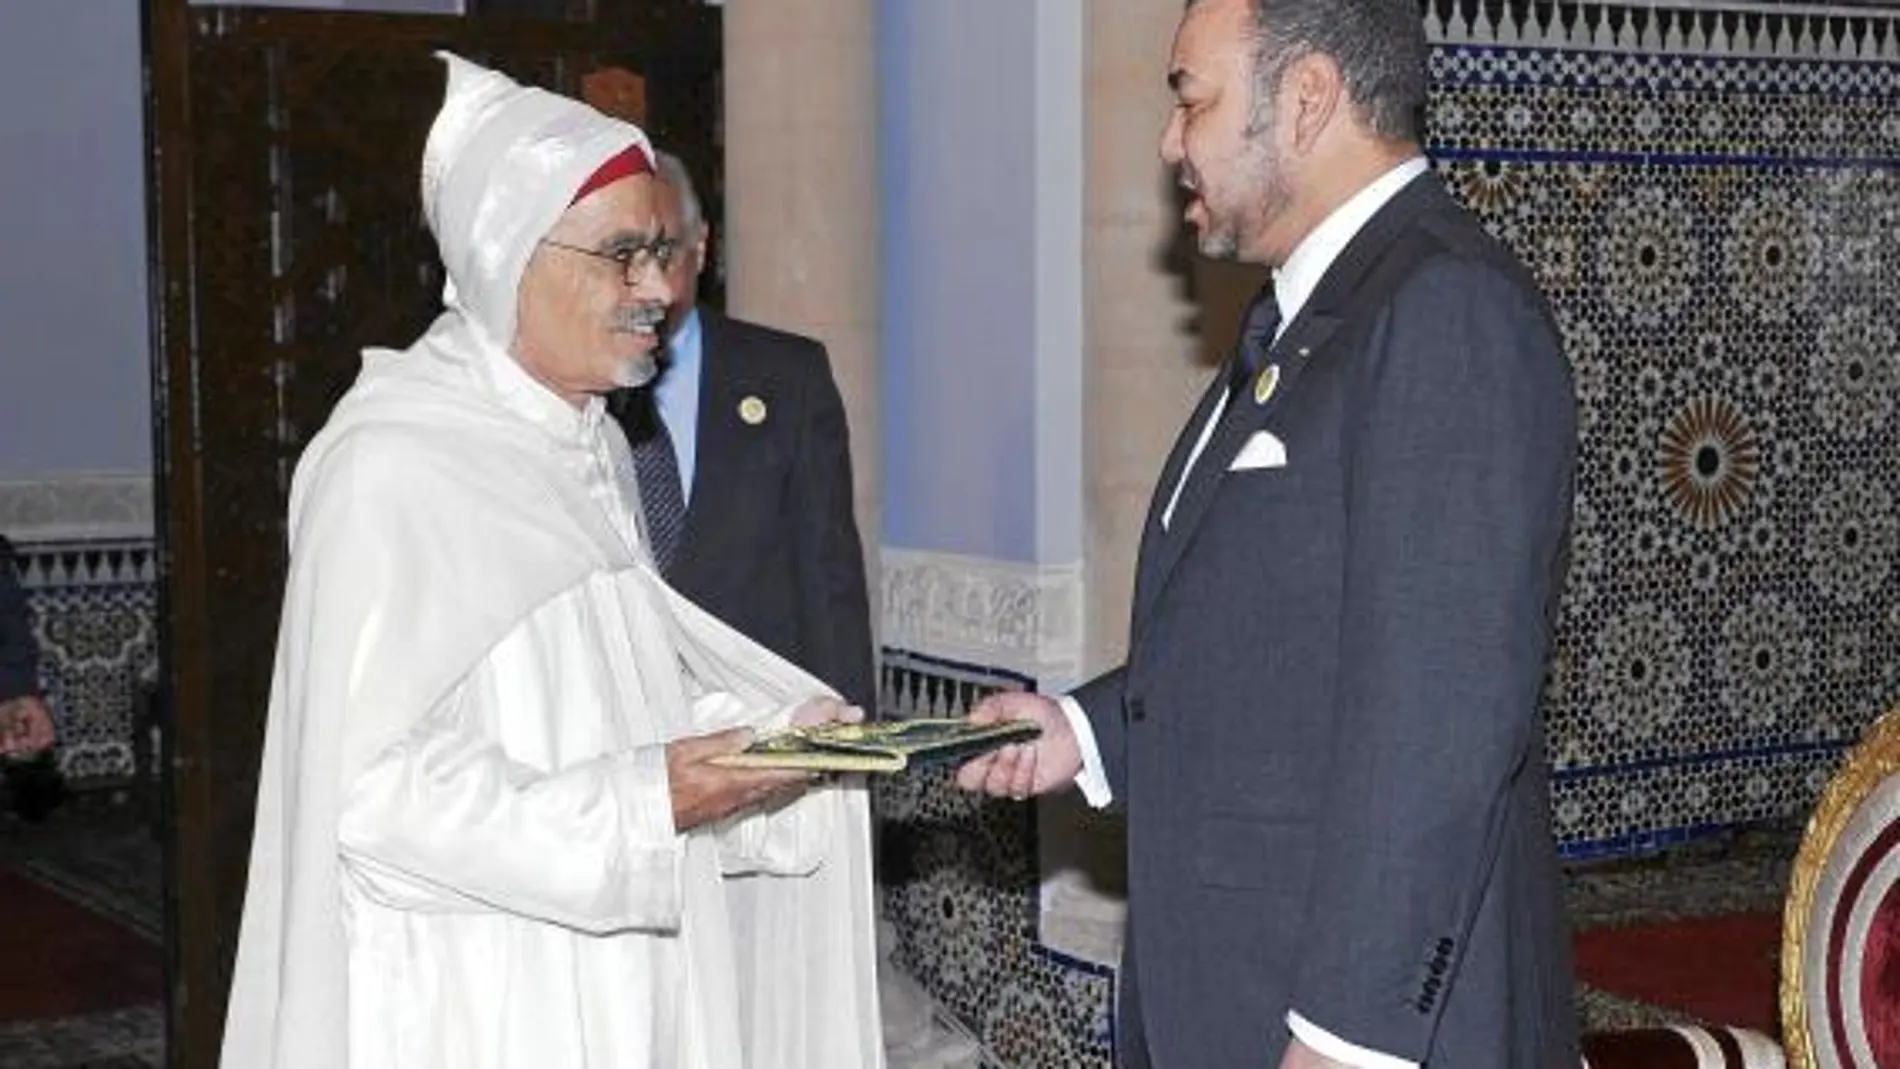 El rey marroquí recibió al nuevo embajador en España y ex miembro del Frente Polisario, en su Palacio de Rabat el pasado viernes para confirmarle en el puesto